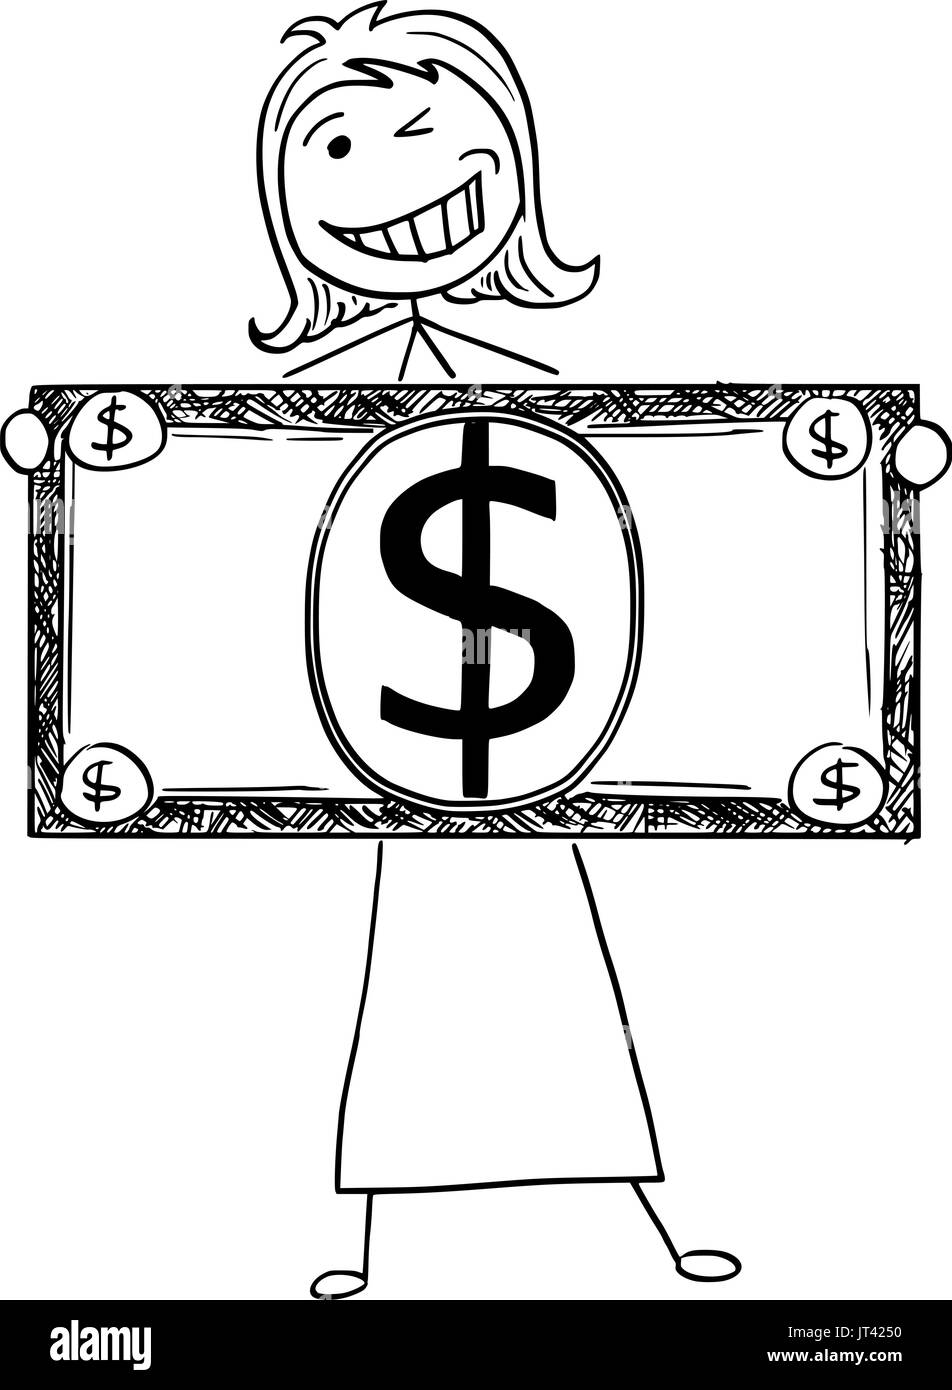 Comic-Illustration der glücklich lächelnd Stick Geschäftsfrau, Manager, weiblichen Angestellten oder Politiker posiert mit großen Dollarschein oder banknote Stock Vektor